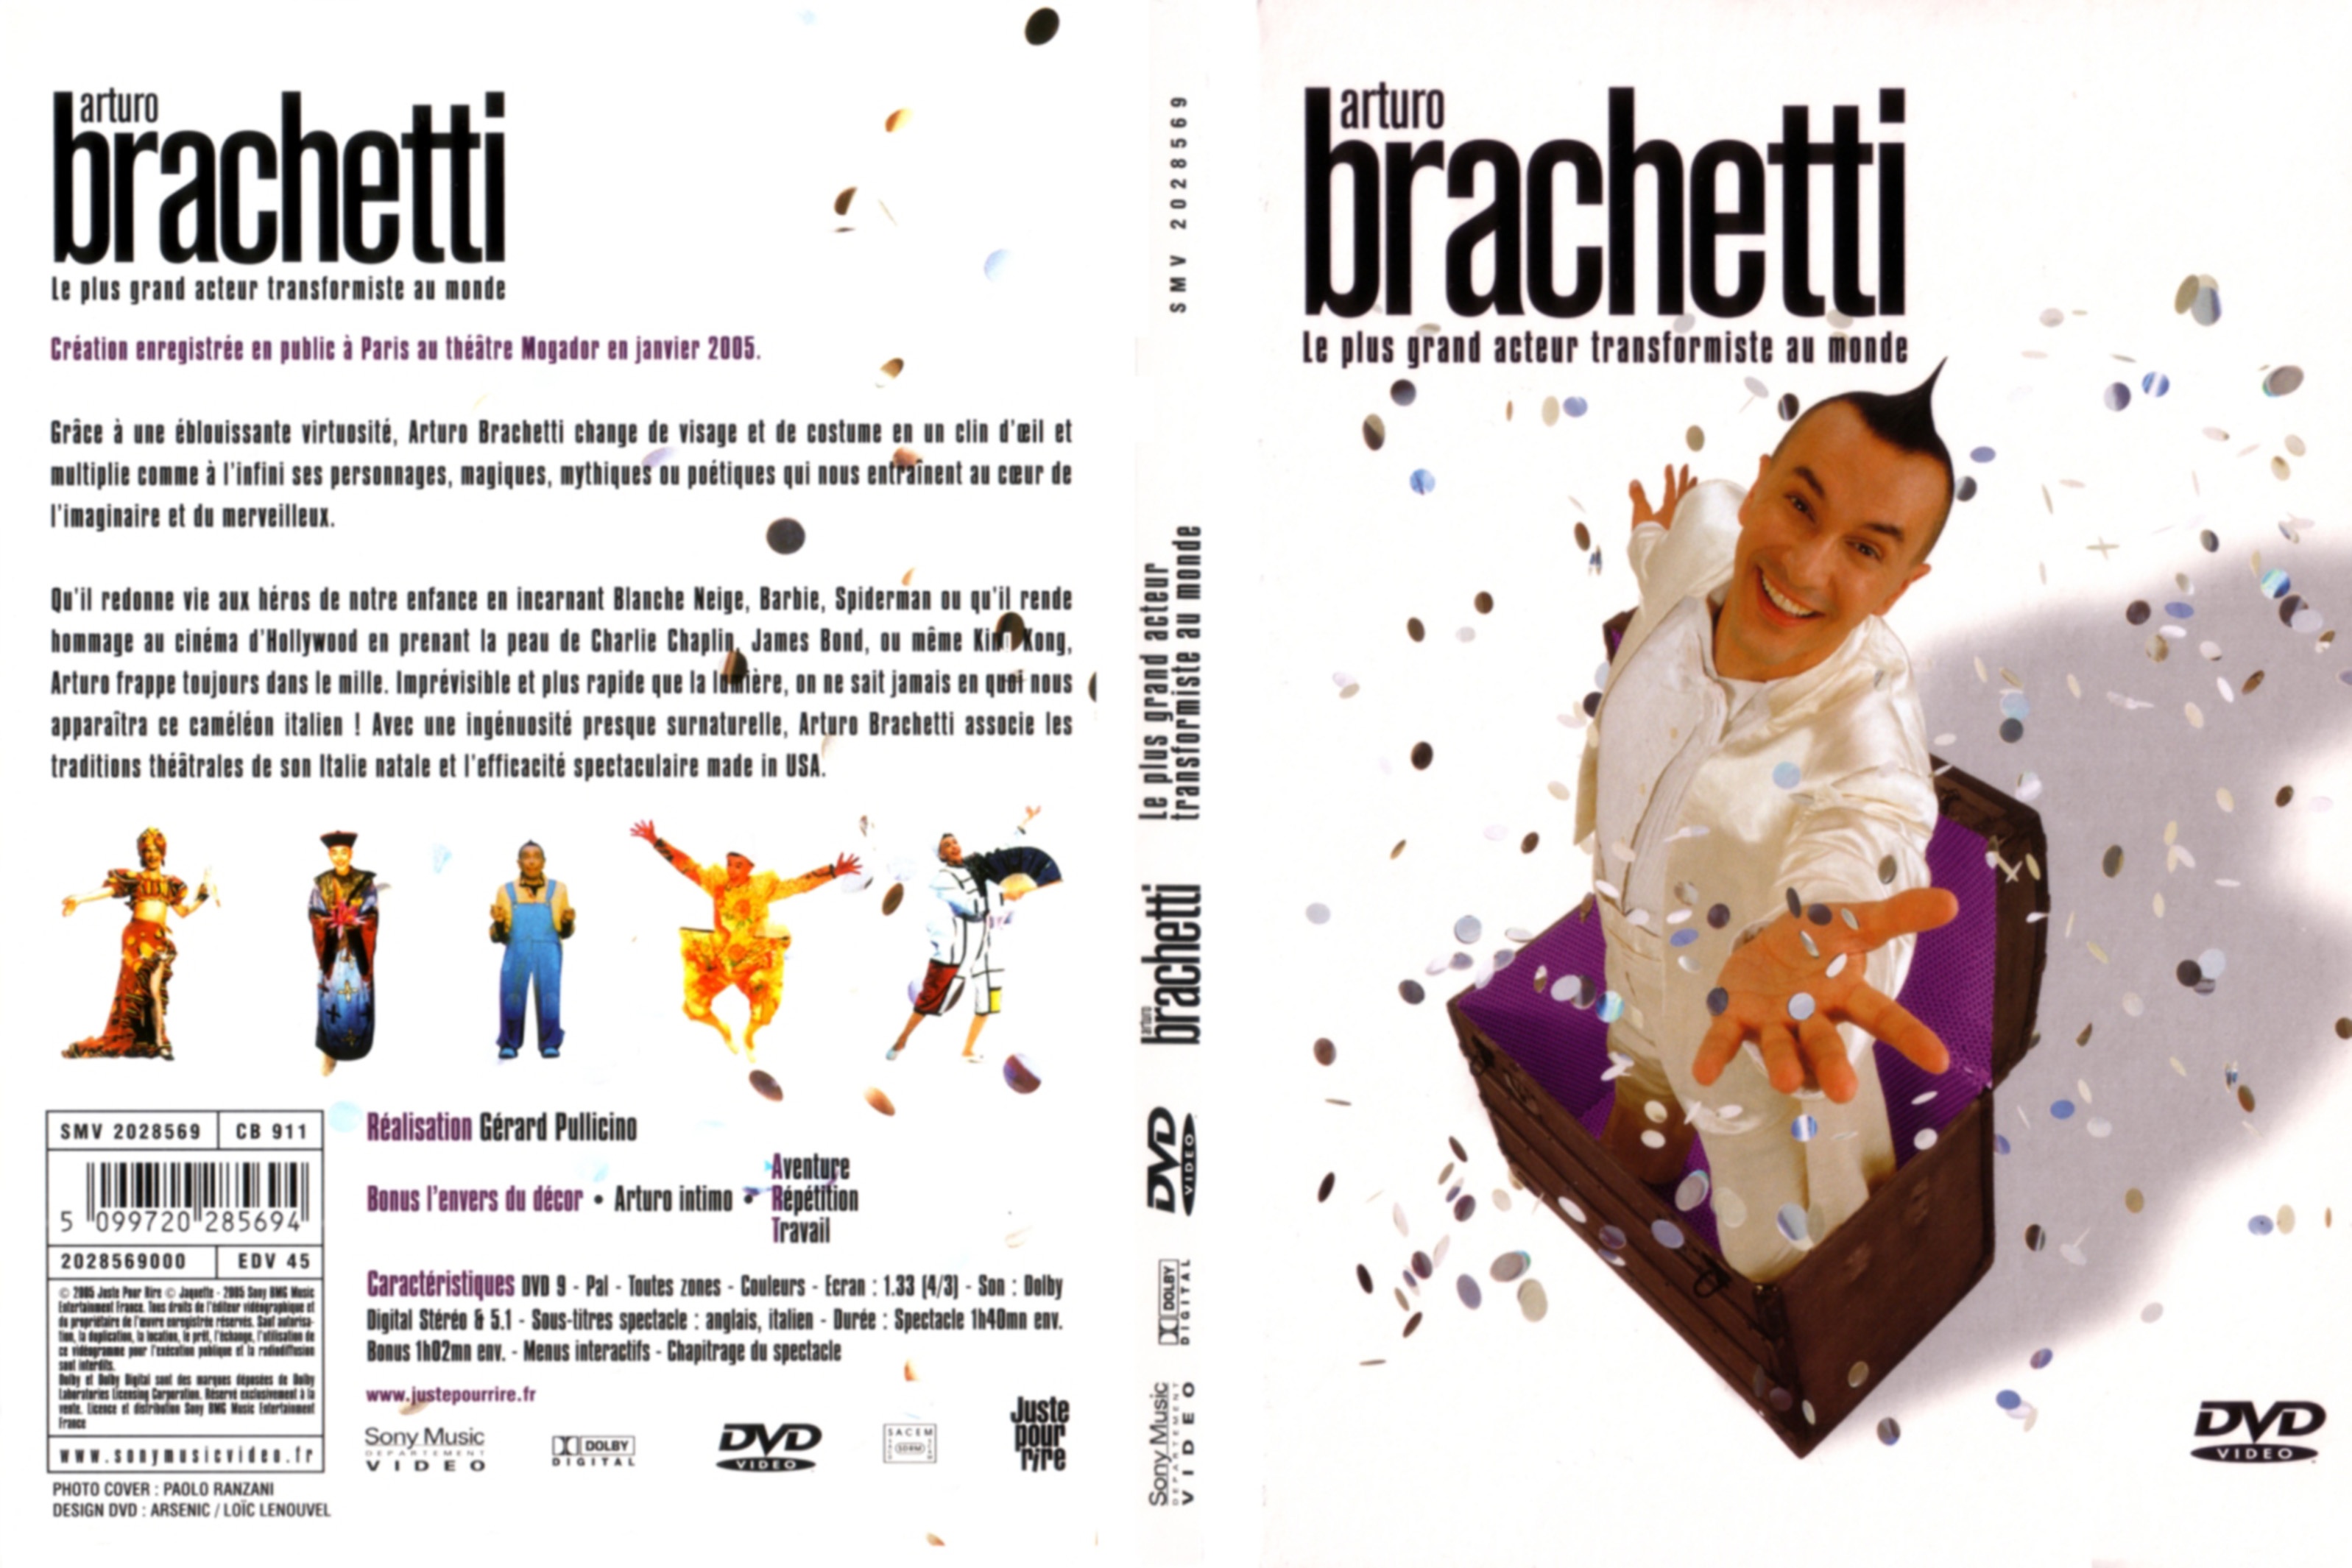 Jaquette DVD Arturo Brachetti